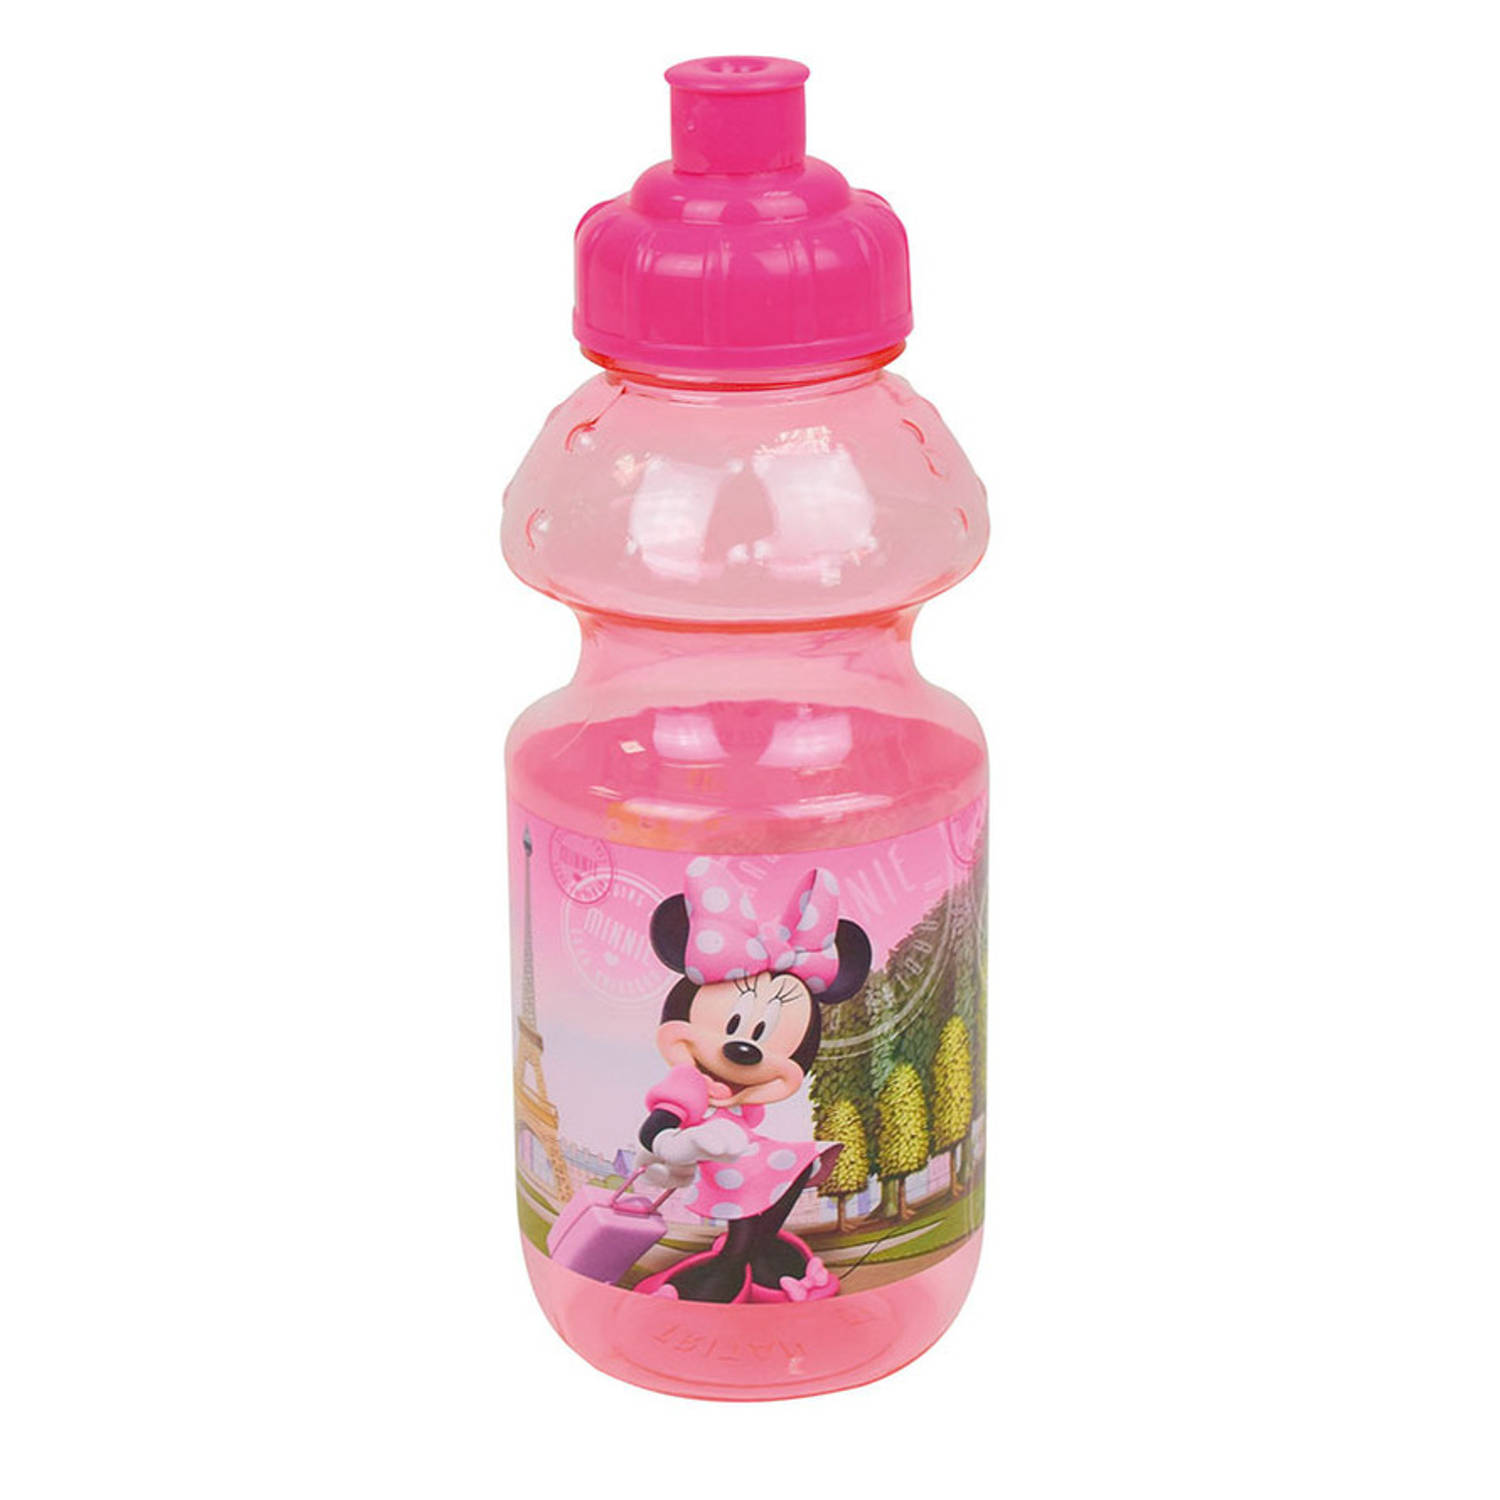 Disney Minnie Mouse drinkfles-drinkbeker-bidon met drinktuitje roze kunststof 350 ml Schoolbekers